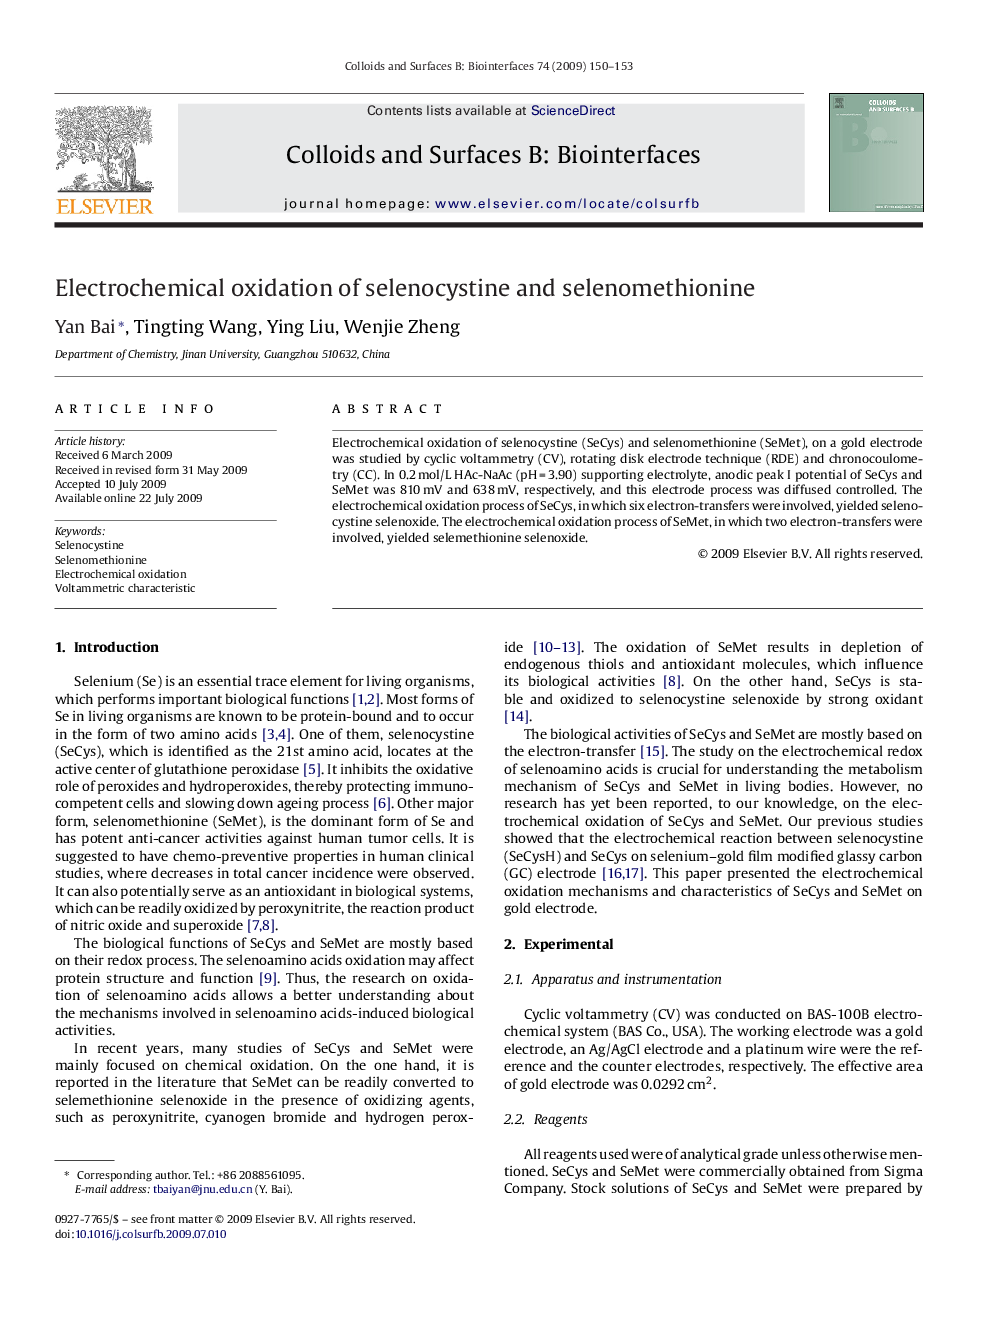 Electrochemical oxidation of selenocystine and selenomethionine